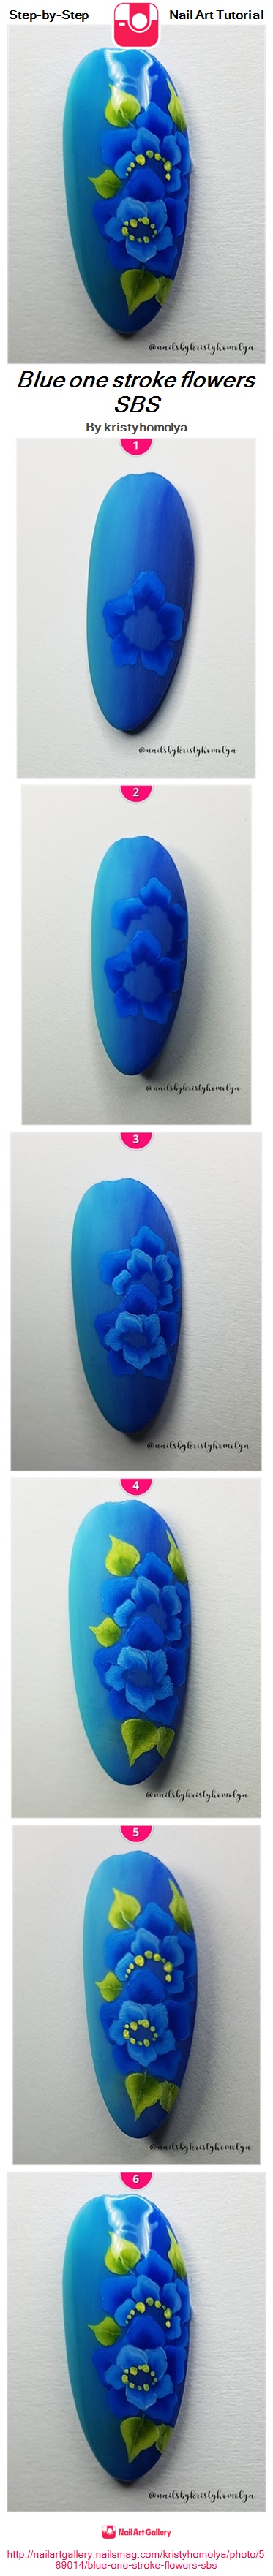 Blue one stroke flowers SBS - Nail Art Gallery